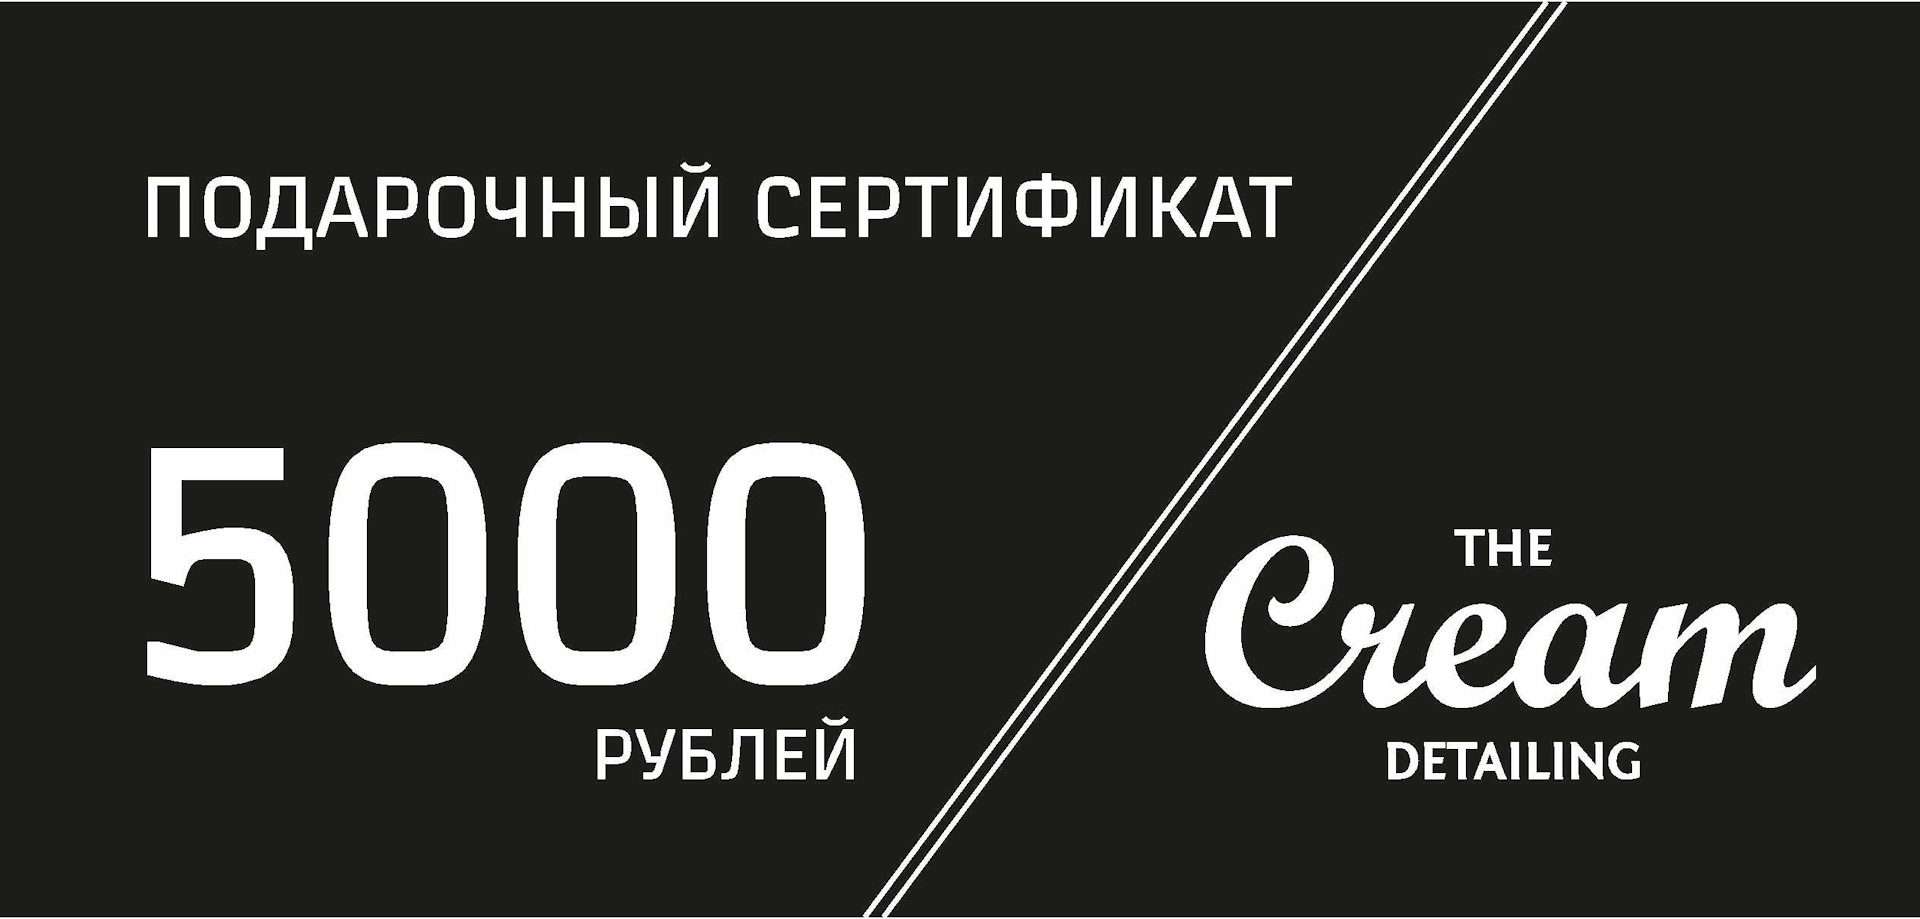 Сертификат на 5000 рублей. Подарочный сертификат на 5000. Подарочный сертификат на 5000 рублей. Купон подарочный сертификат.